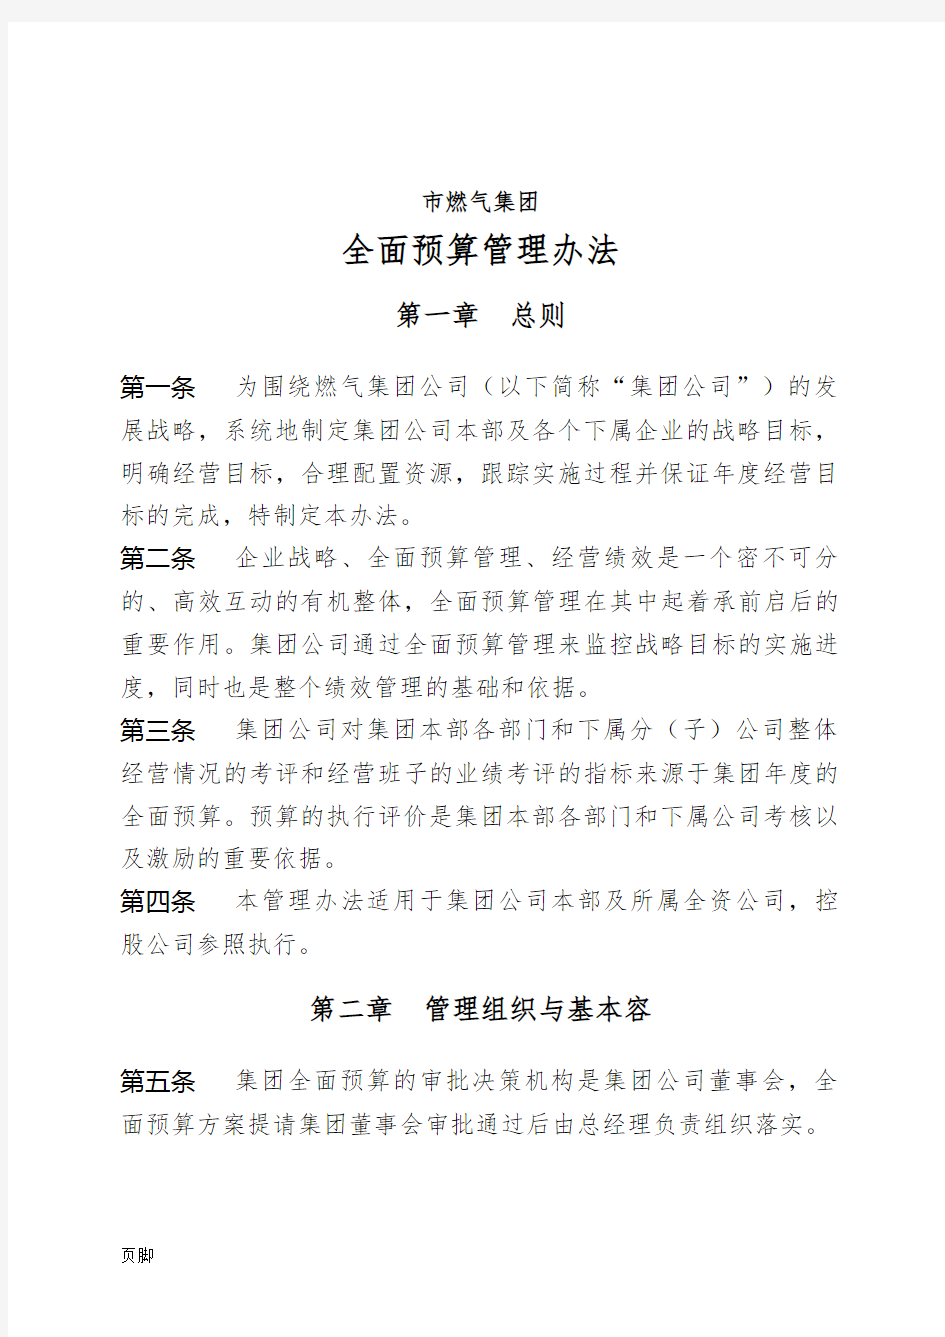 深圳市燃气集团有限公司全面预算管理办法